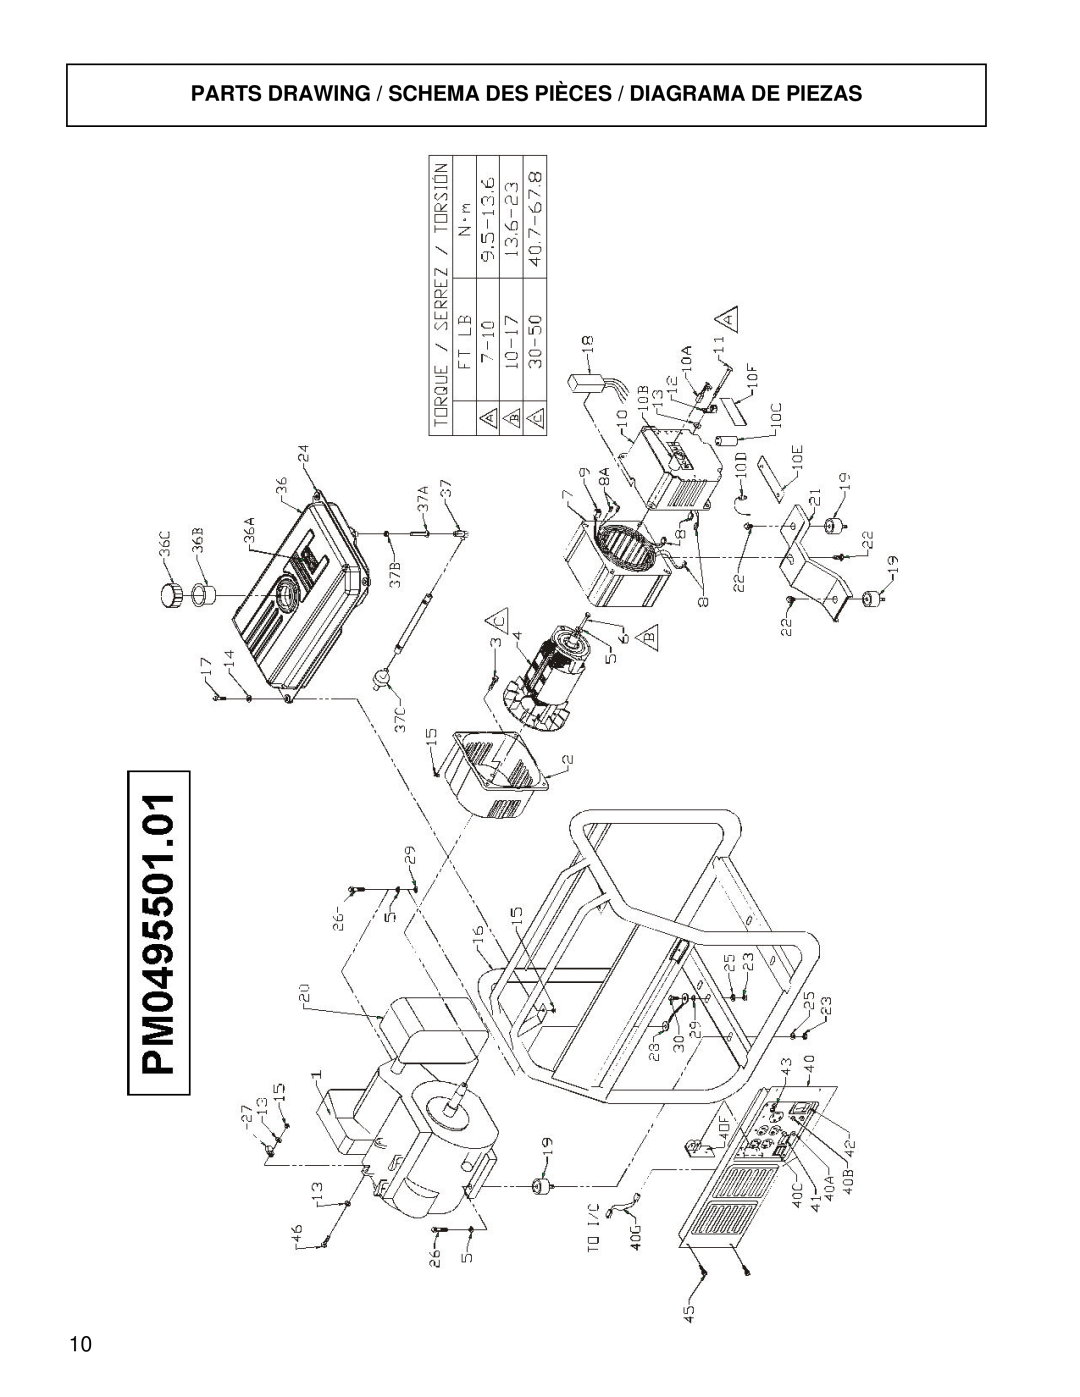 Powermate PM0495501.01 manual Parts Drawing / Schema Des Pièces / Diagrama De Piezas 